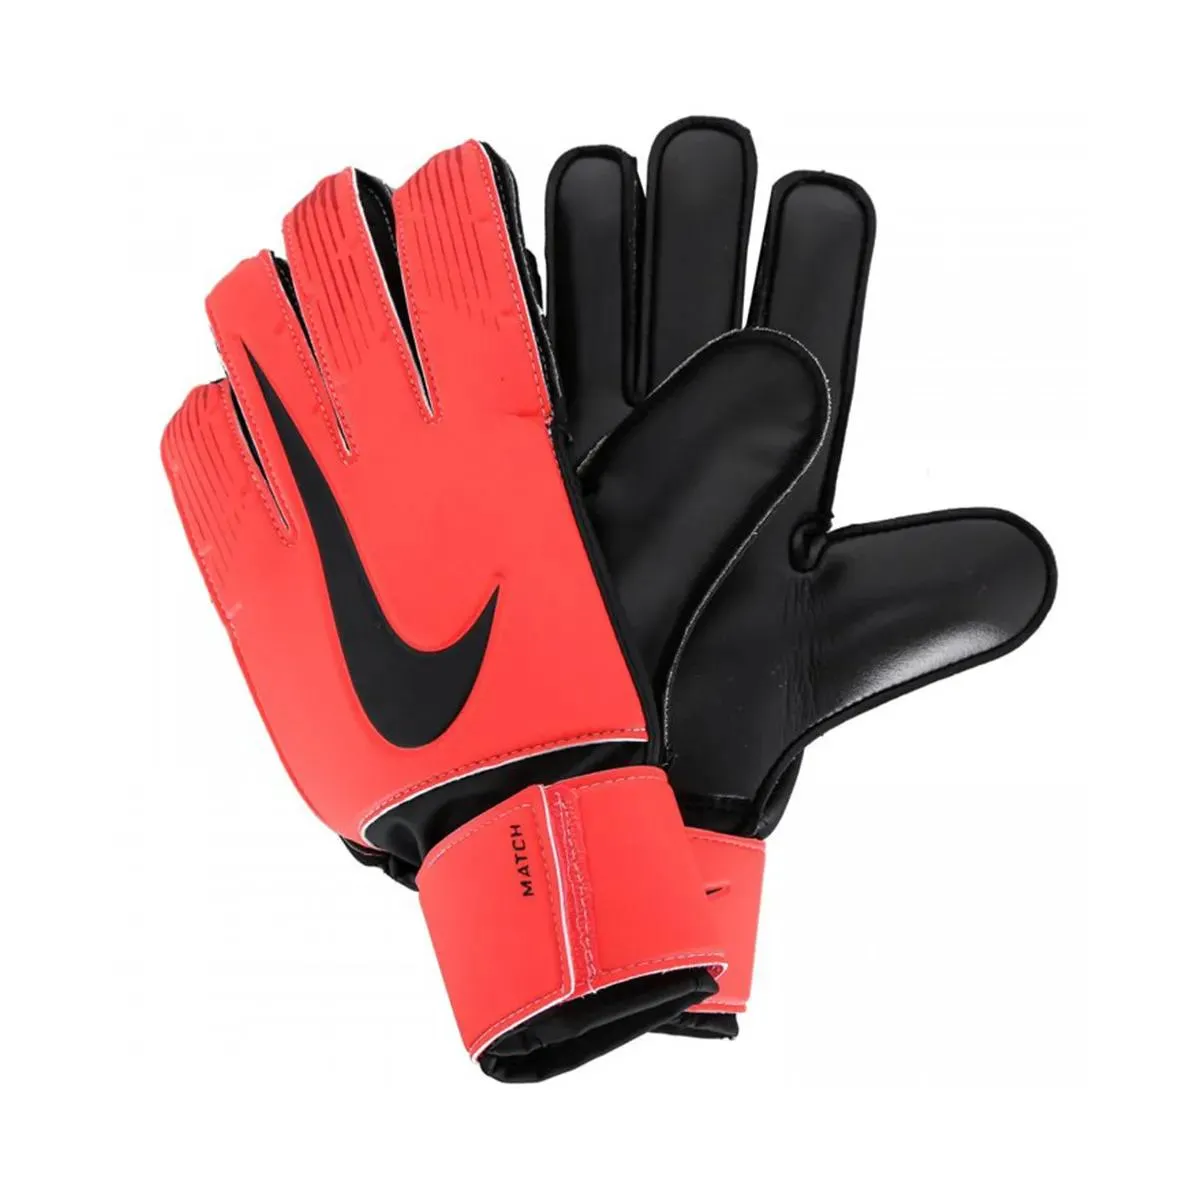 Nike Golmanske rukavice NK GK MATCH JR-FA18 